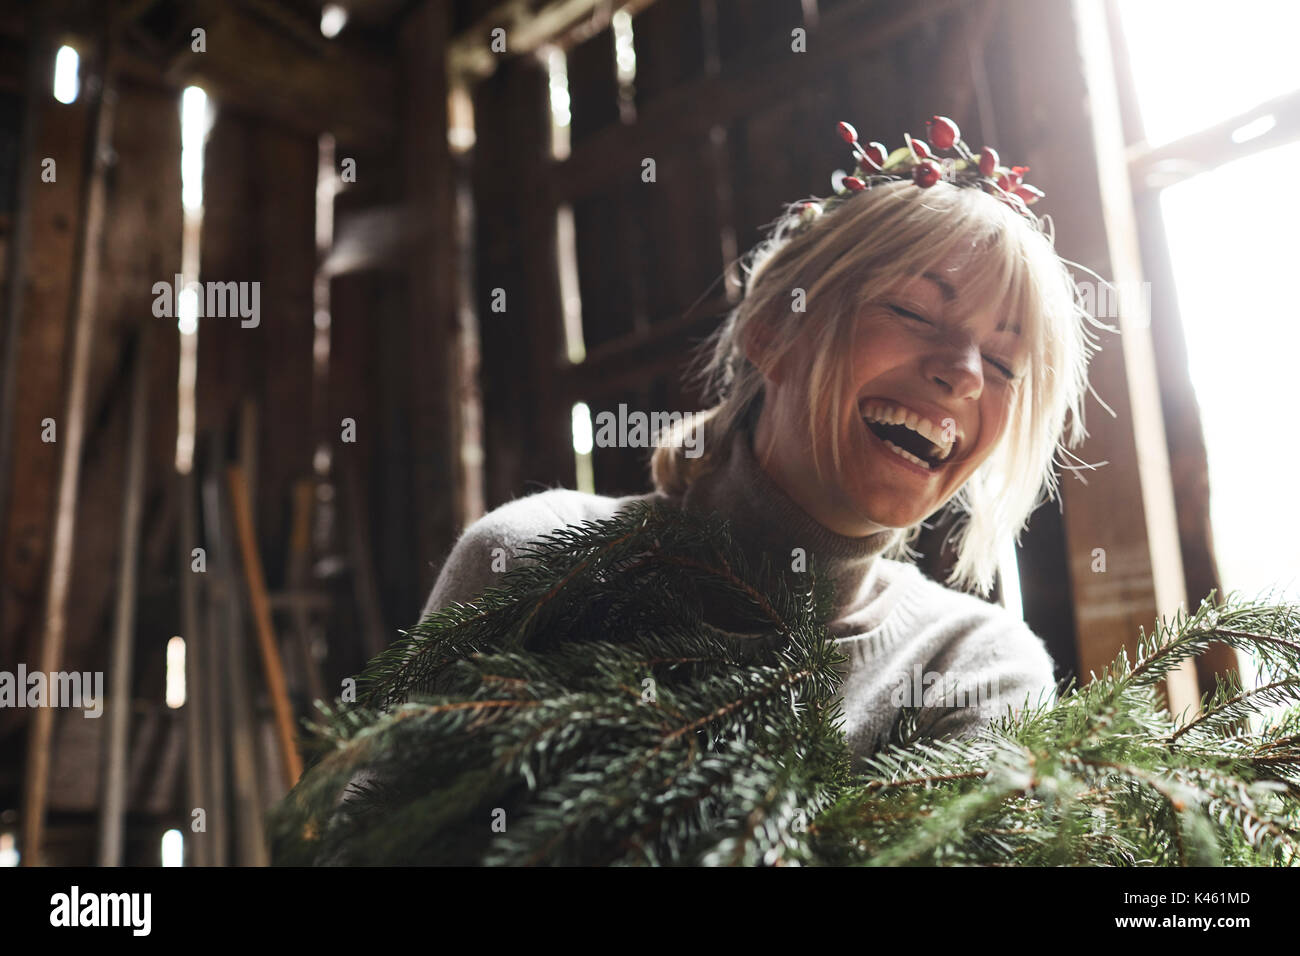 Femme blonde, coiffe, Garland avec églantier, les rameaux des arbres à feuillage persistant pour la décoration, rire, portrait Banque D'Images